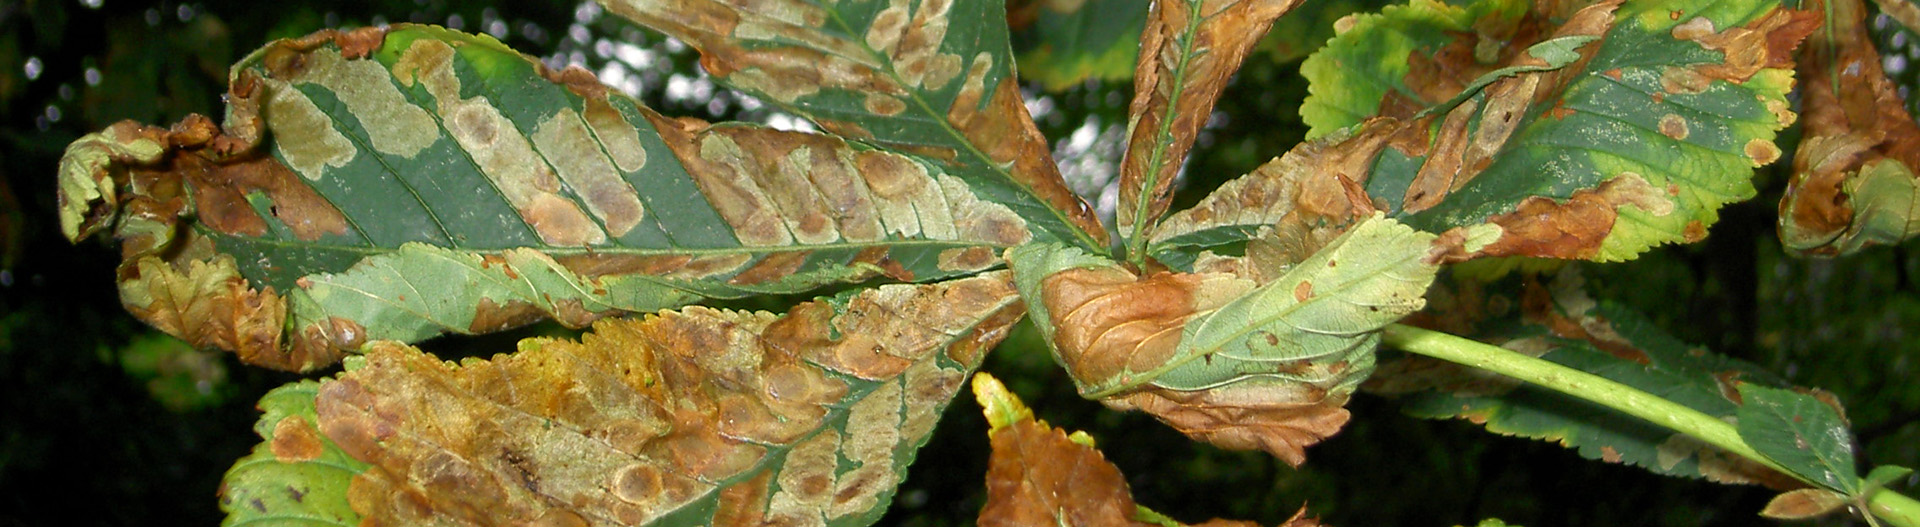 Horse Chestnut leaves affected by horse chestnut leaf miner